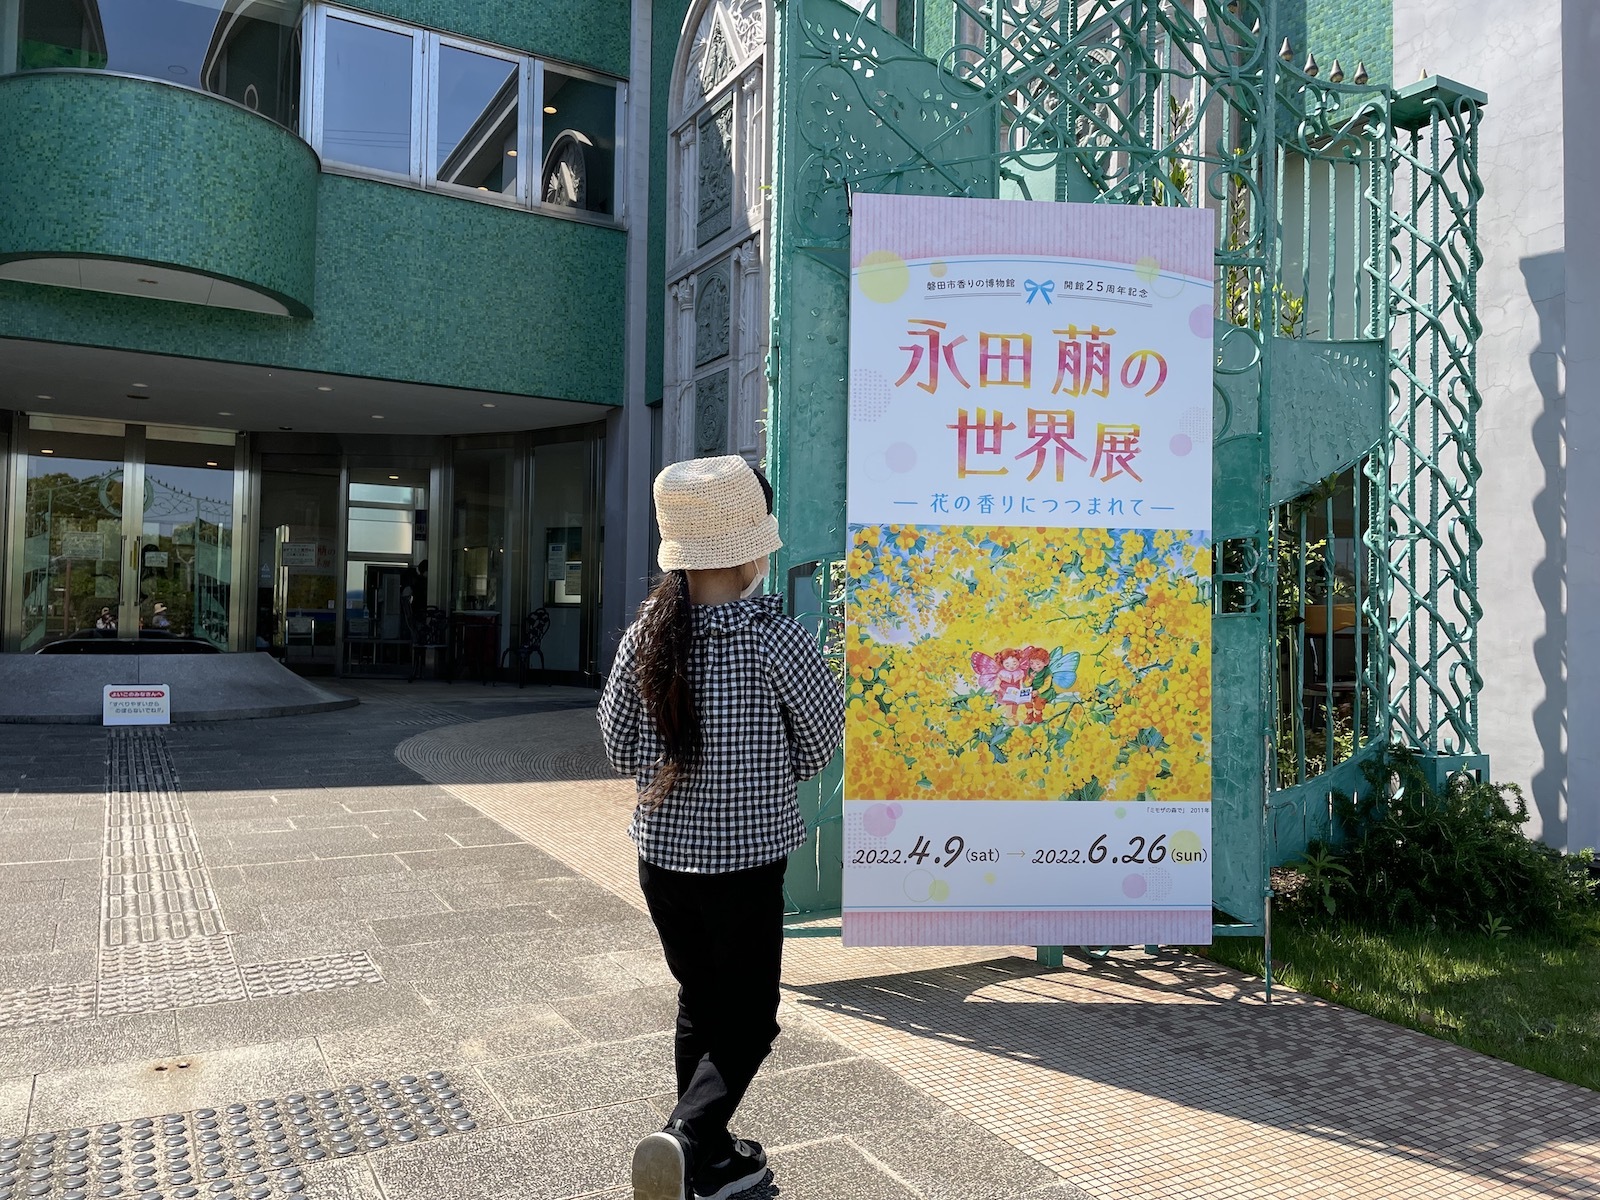 磐田市香りの博物館「永田萌の世界展」 浜松市子育て情報サイト ぴっぴ